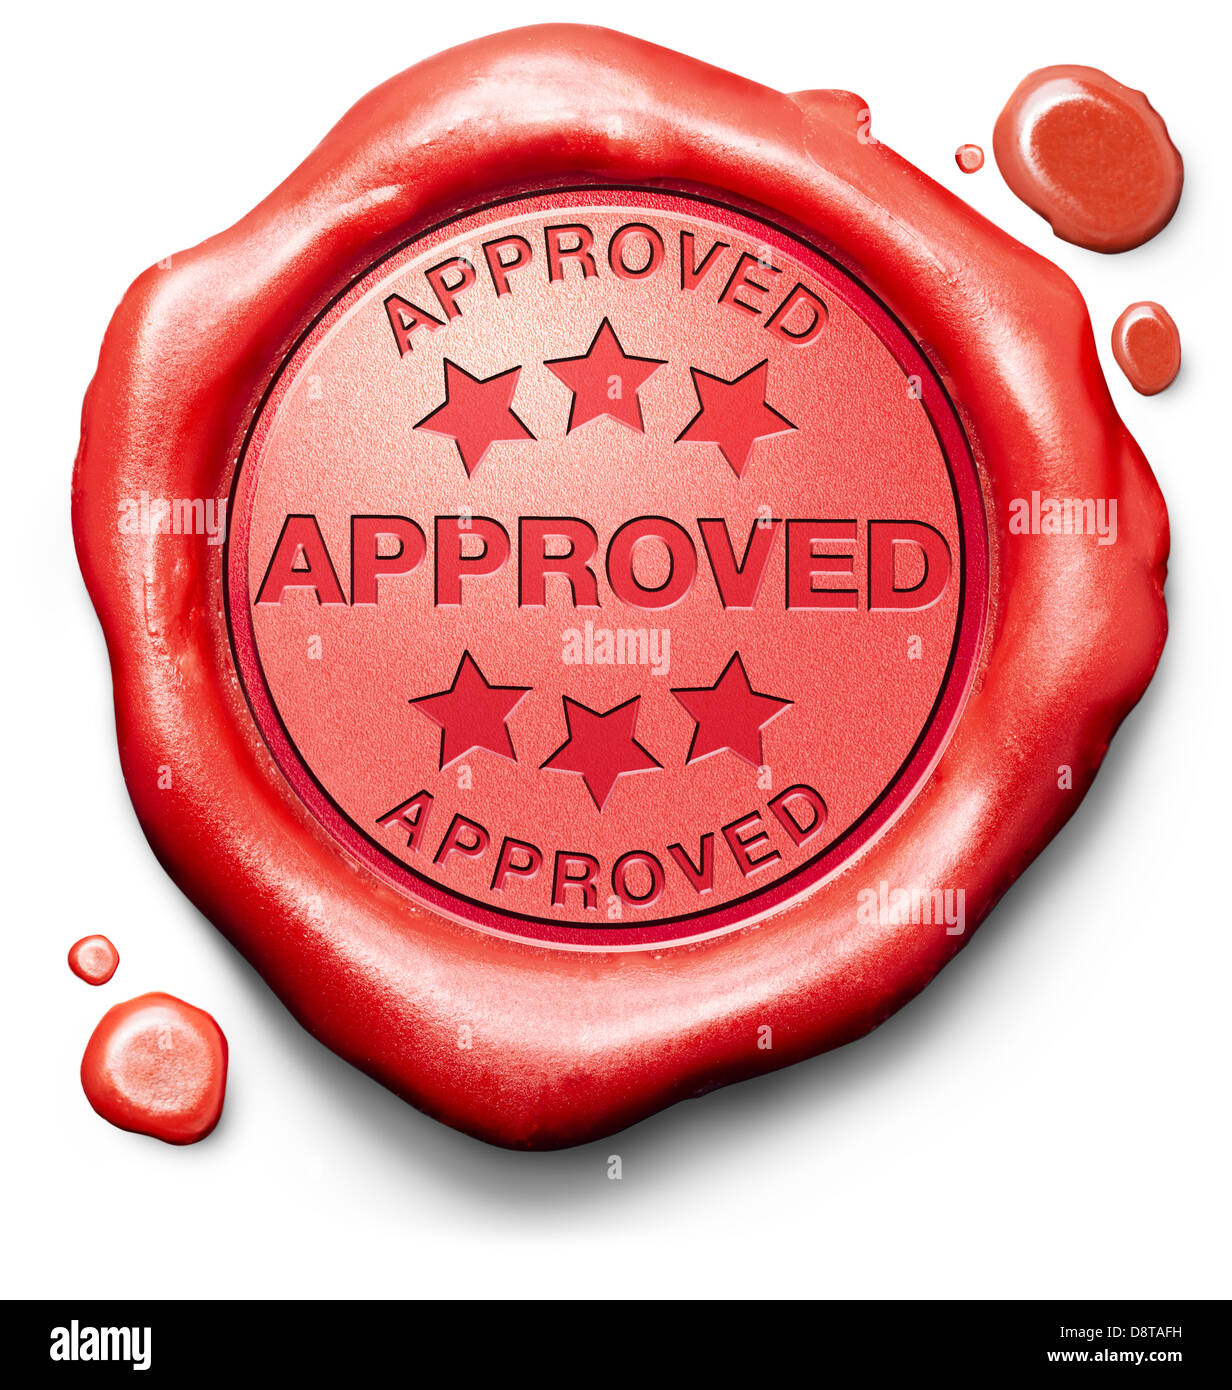 Approvato ha superato il test e accesso concessa approvazione e accettato accreditato di francobollo rosso etichetta o icona Foto Stock